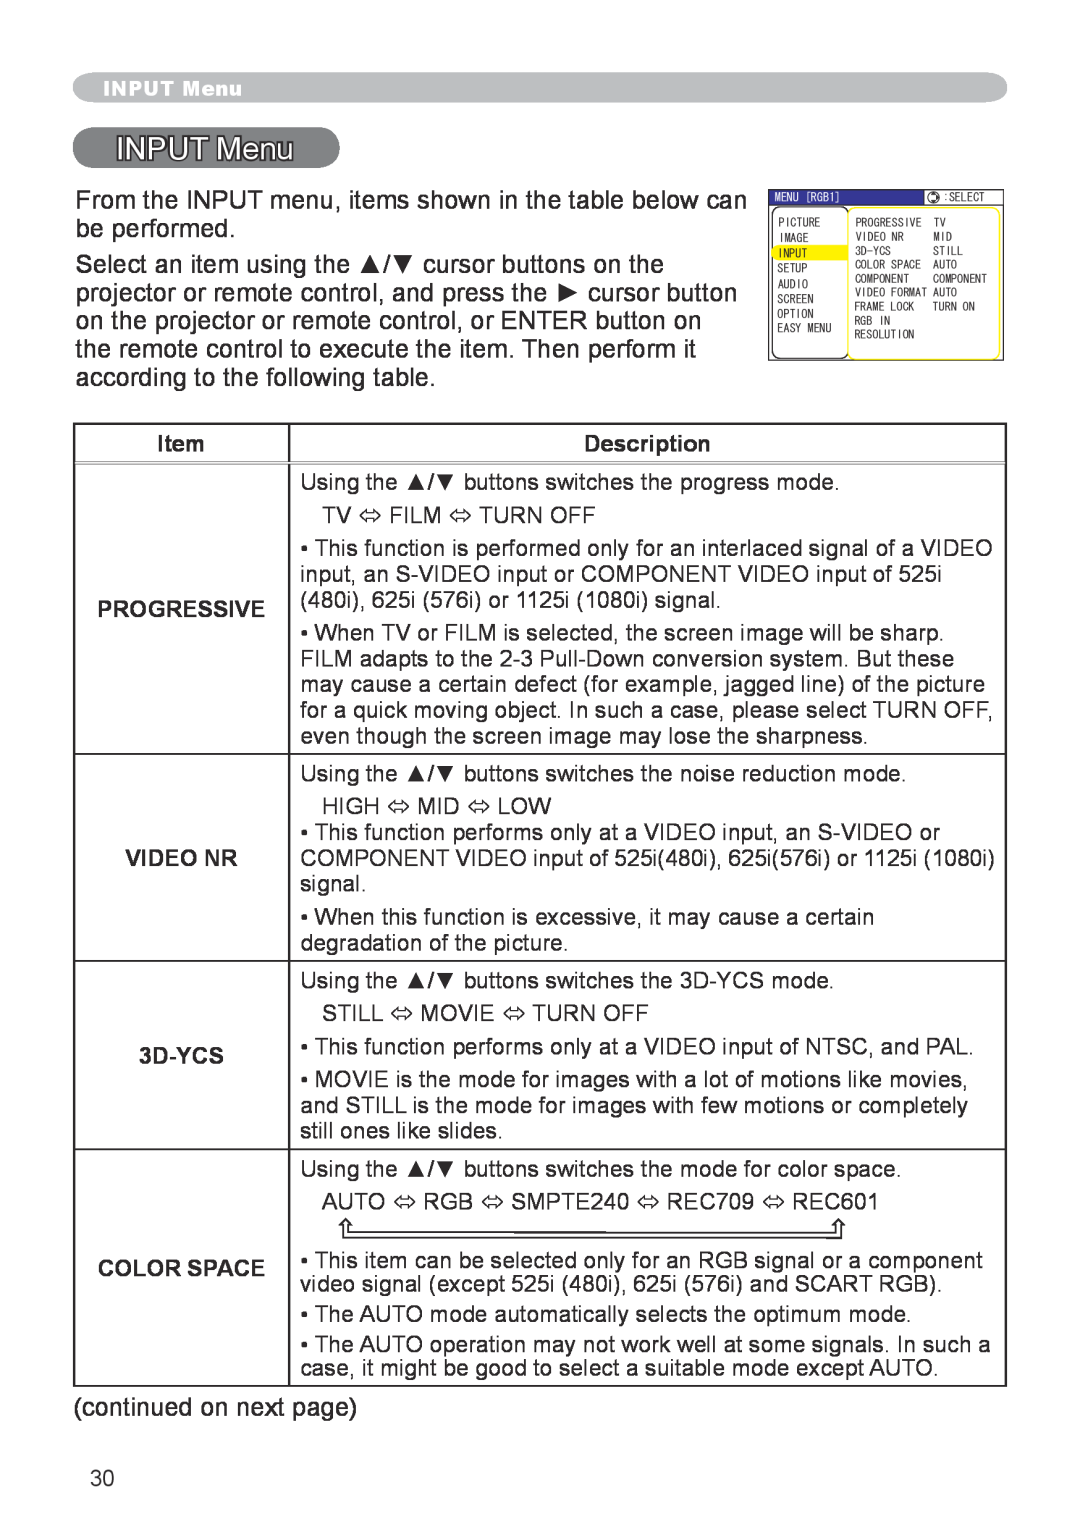 Hitachi CP-X600 user manual INPUT Menu, Description, Progressive, 3D-YCS, Color Space 